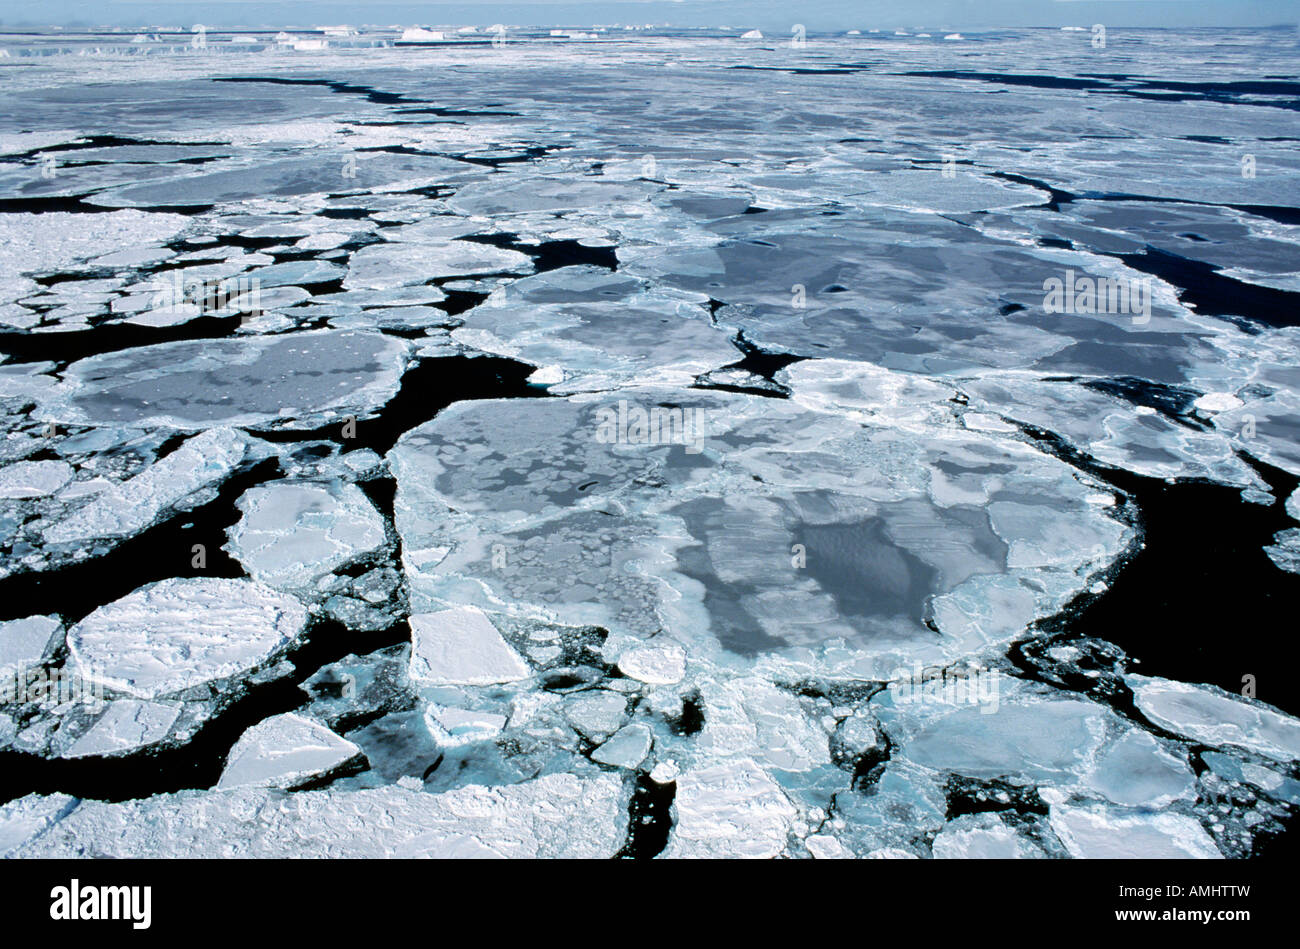 pack ice in the Weddell Sea Antarctica Antarktis Eis Eisfelder Eislandschaften Eisschollen Kaelte Landschaften Meer Meereis Natu Stock Photo